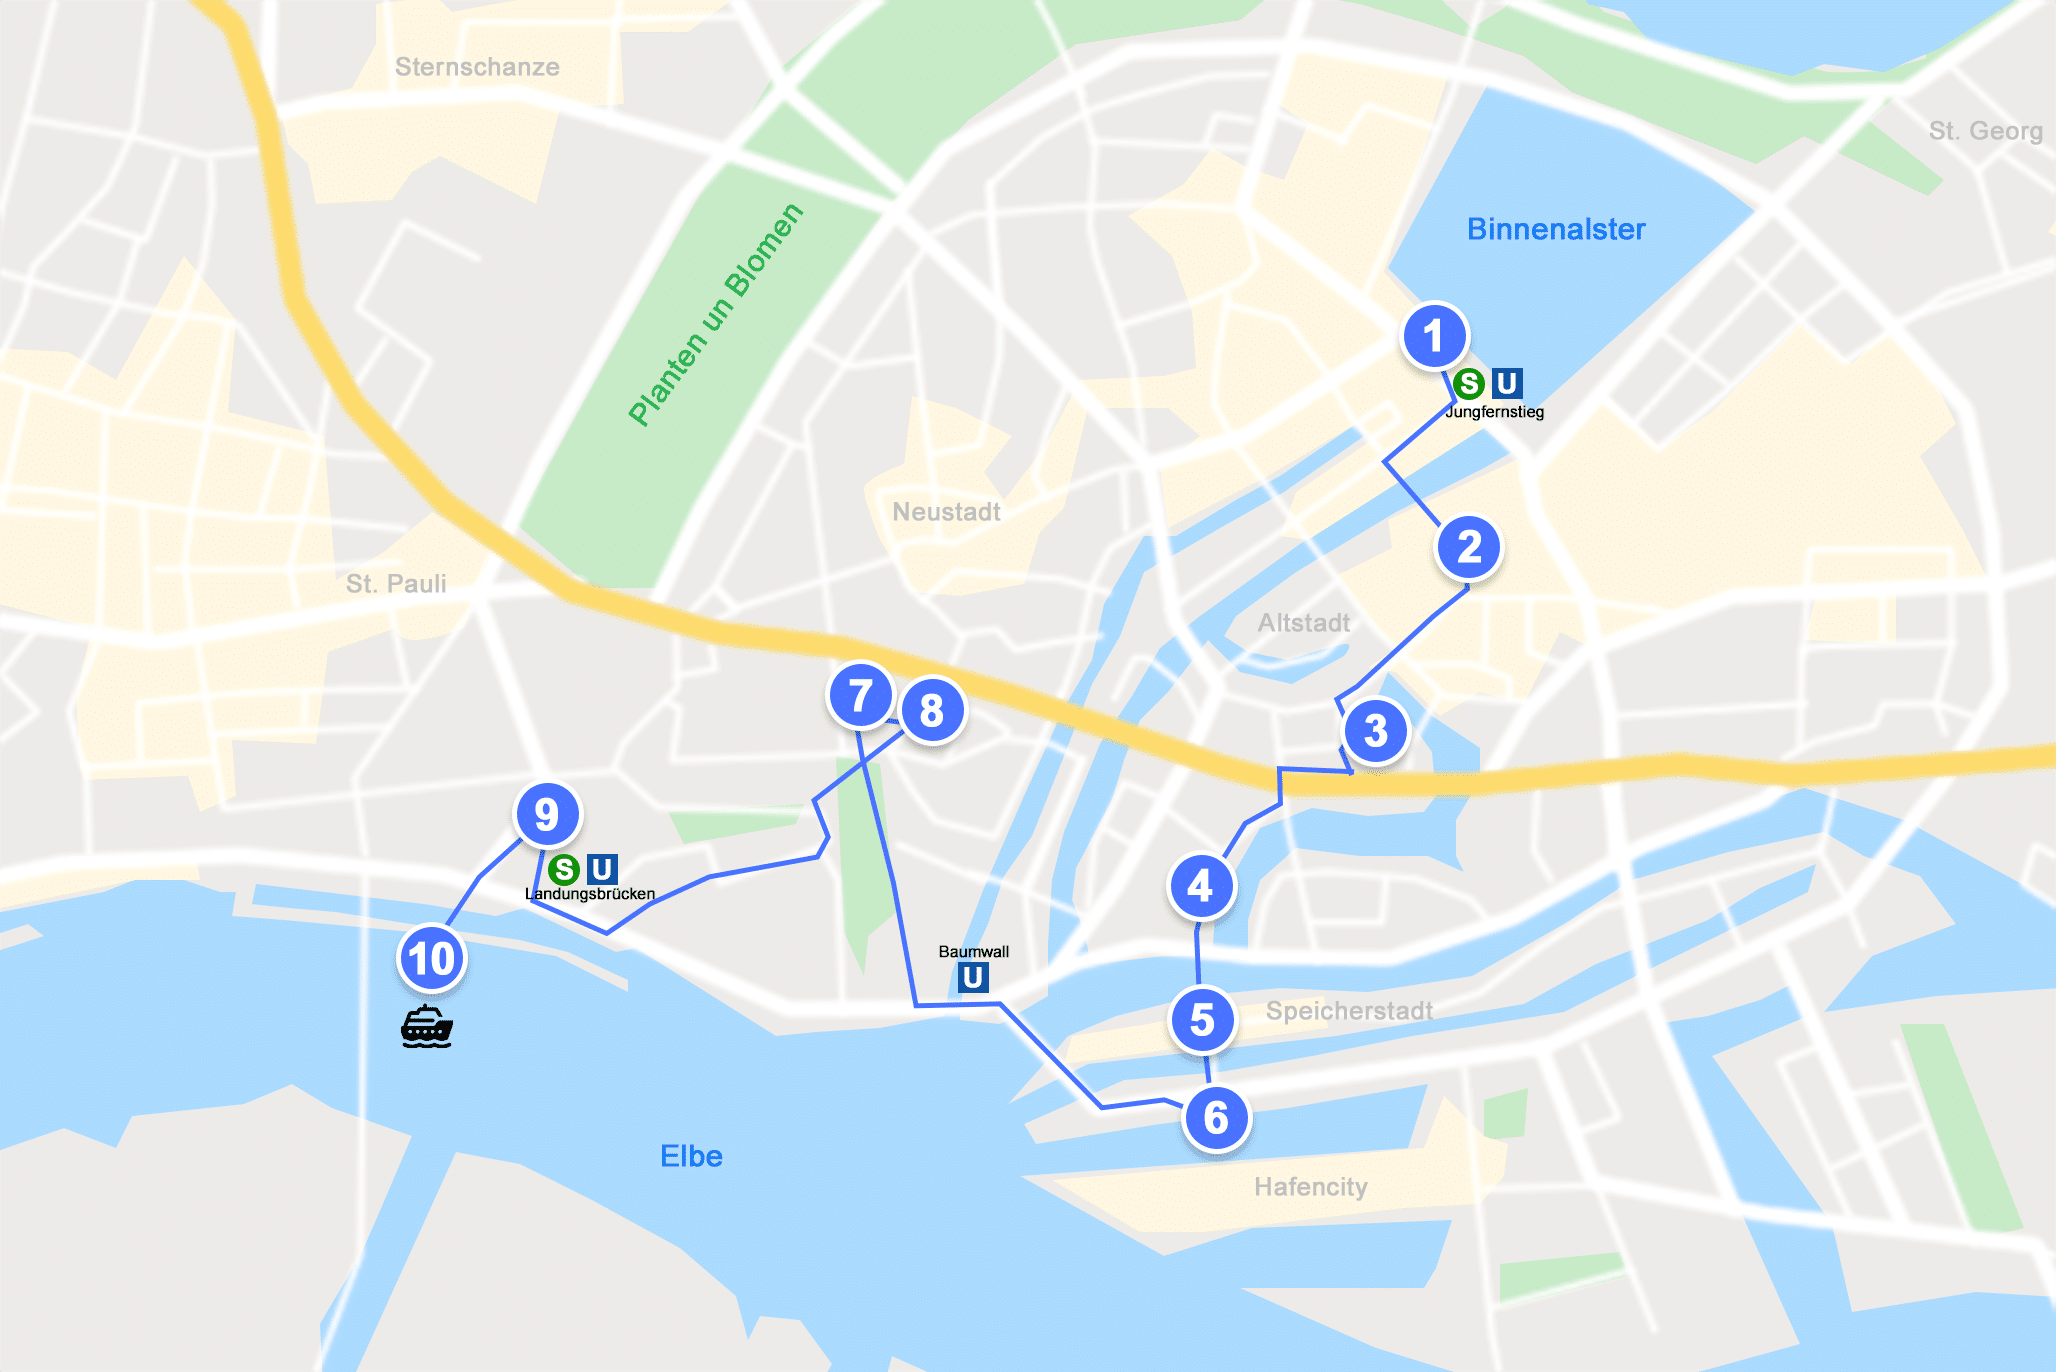 Karte mit Stadtrundgang-Route zu den Hamburg Sehenswürdigkeiten.